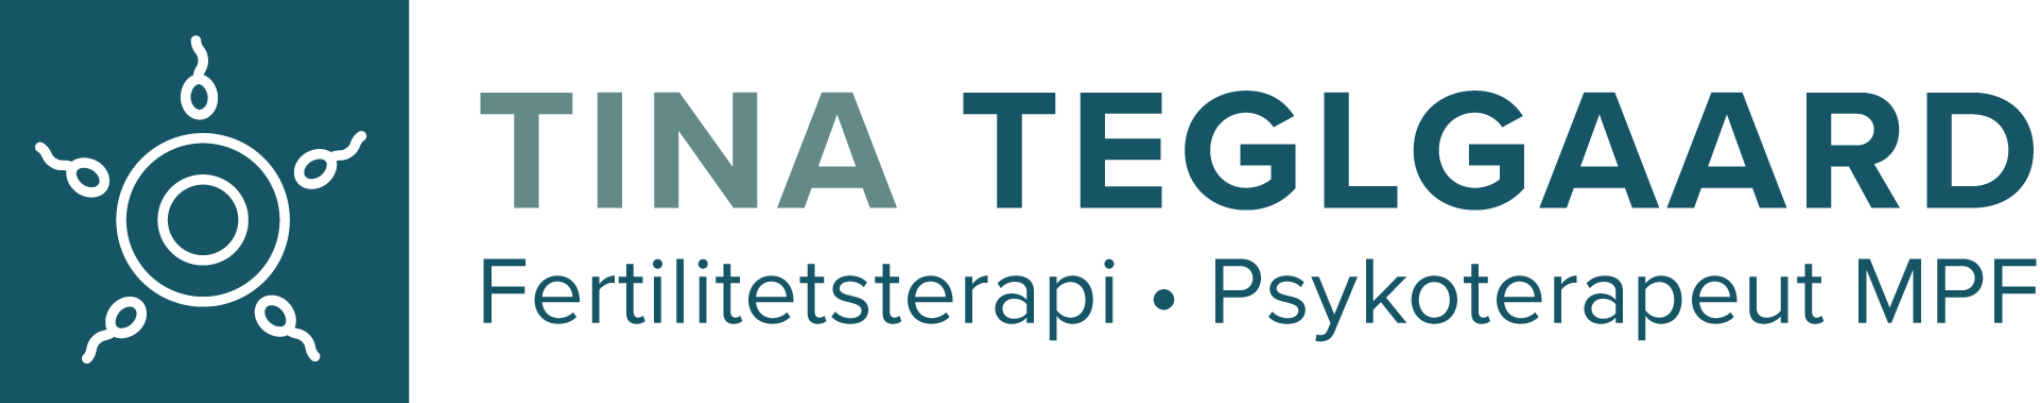 Tina Teglgaard logo